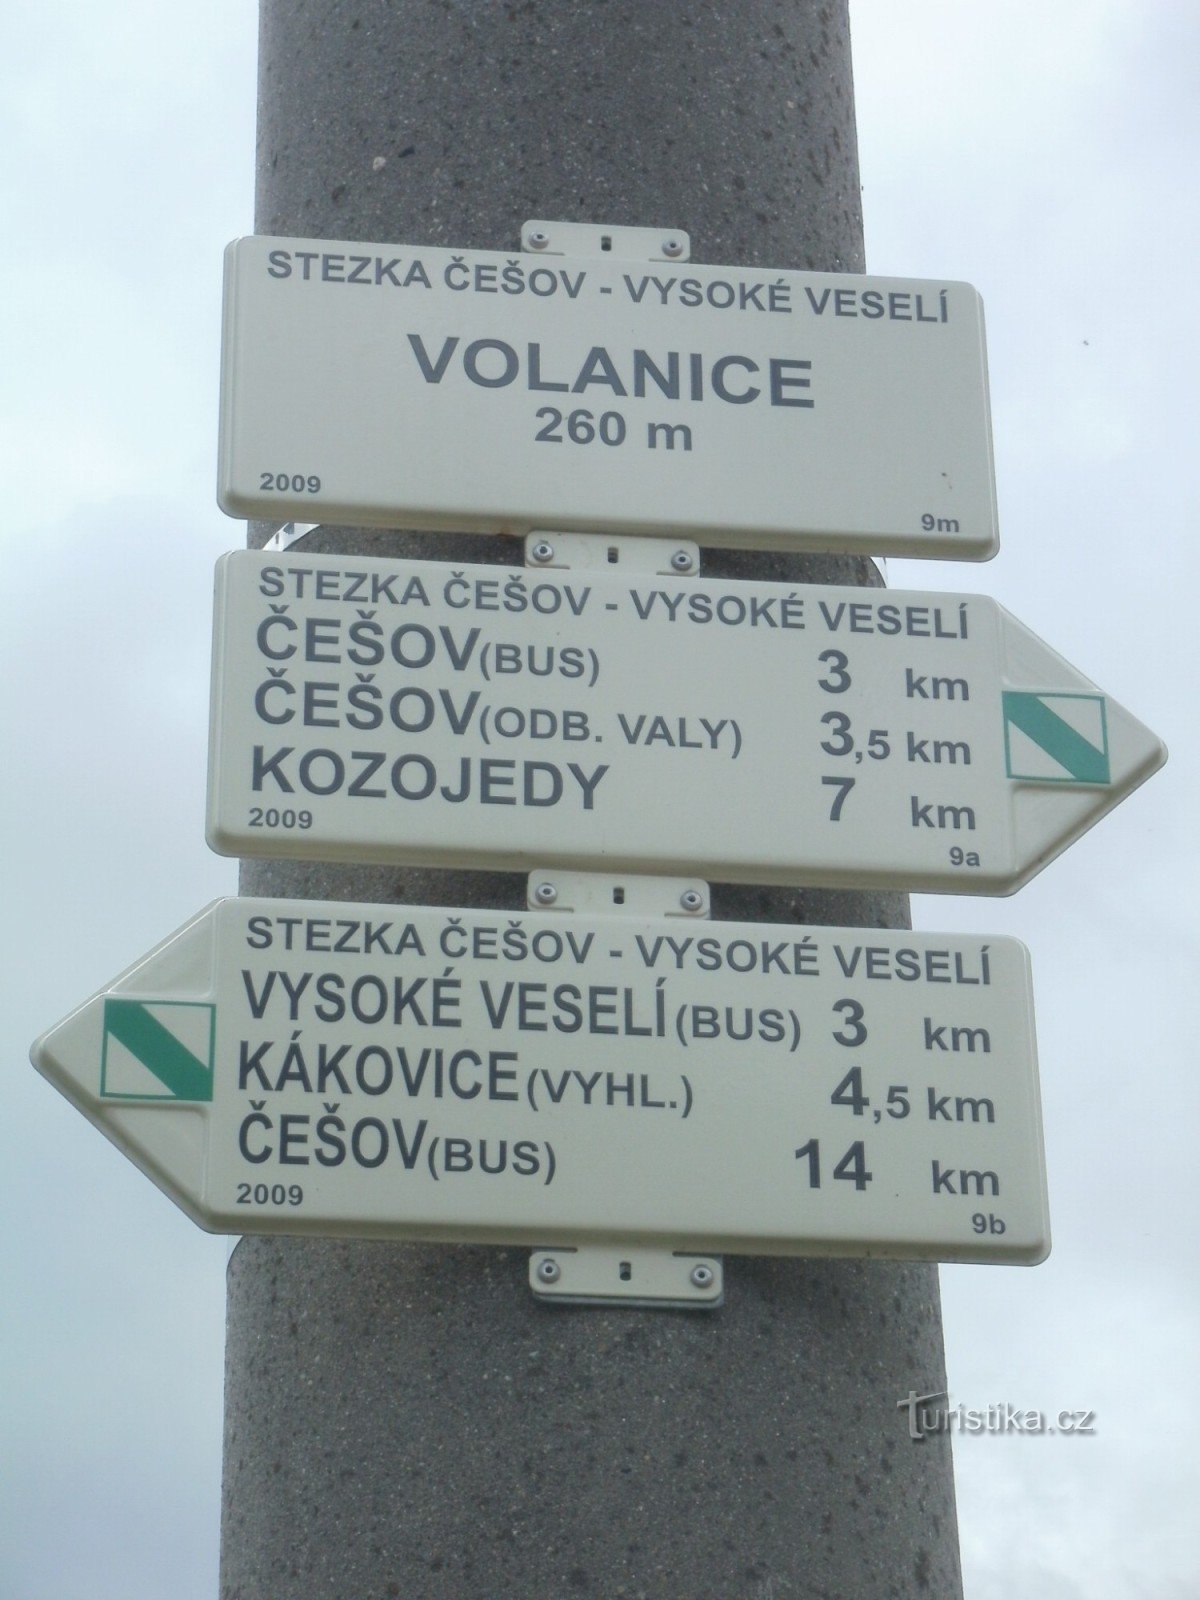 skrzyżowanie NS Češov-Vysoké Veselí - Volanice